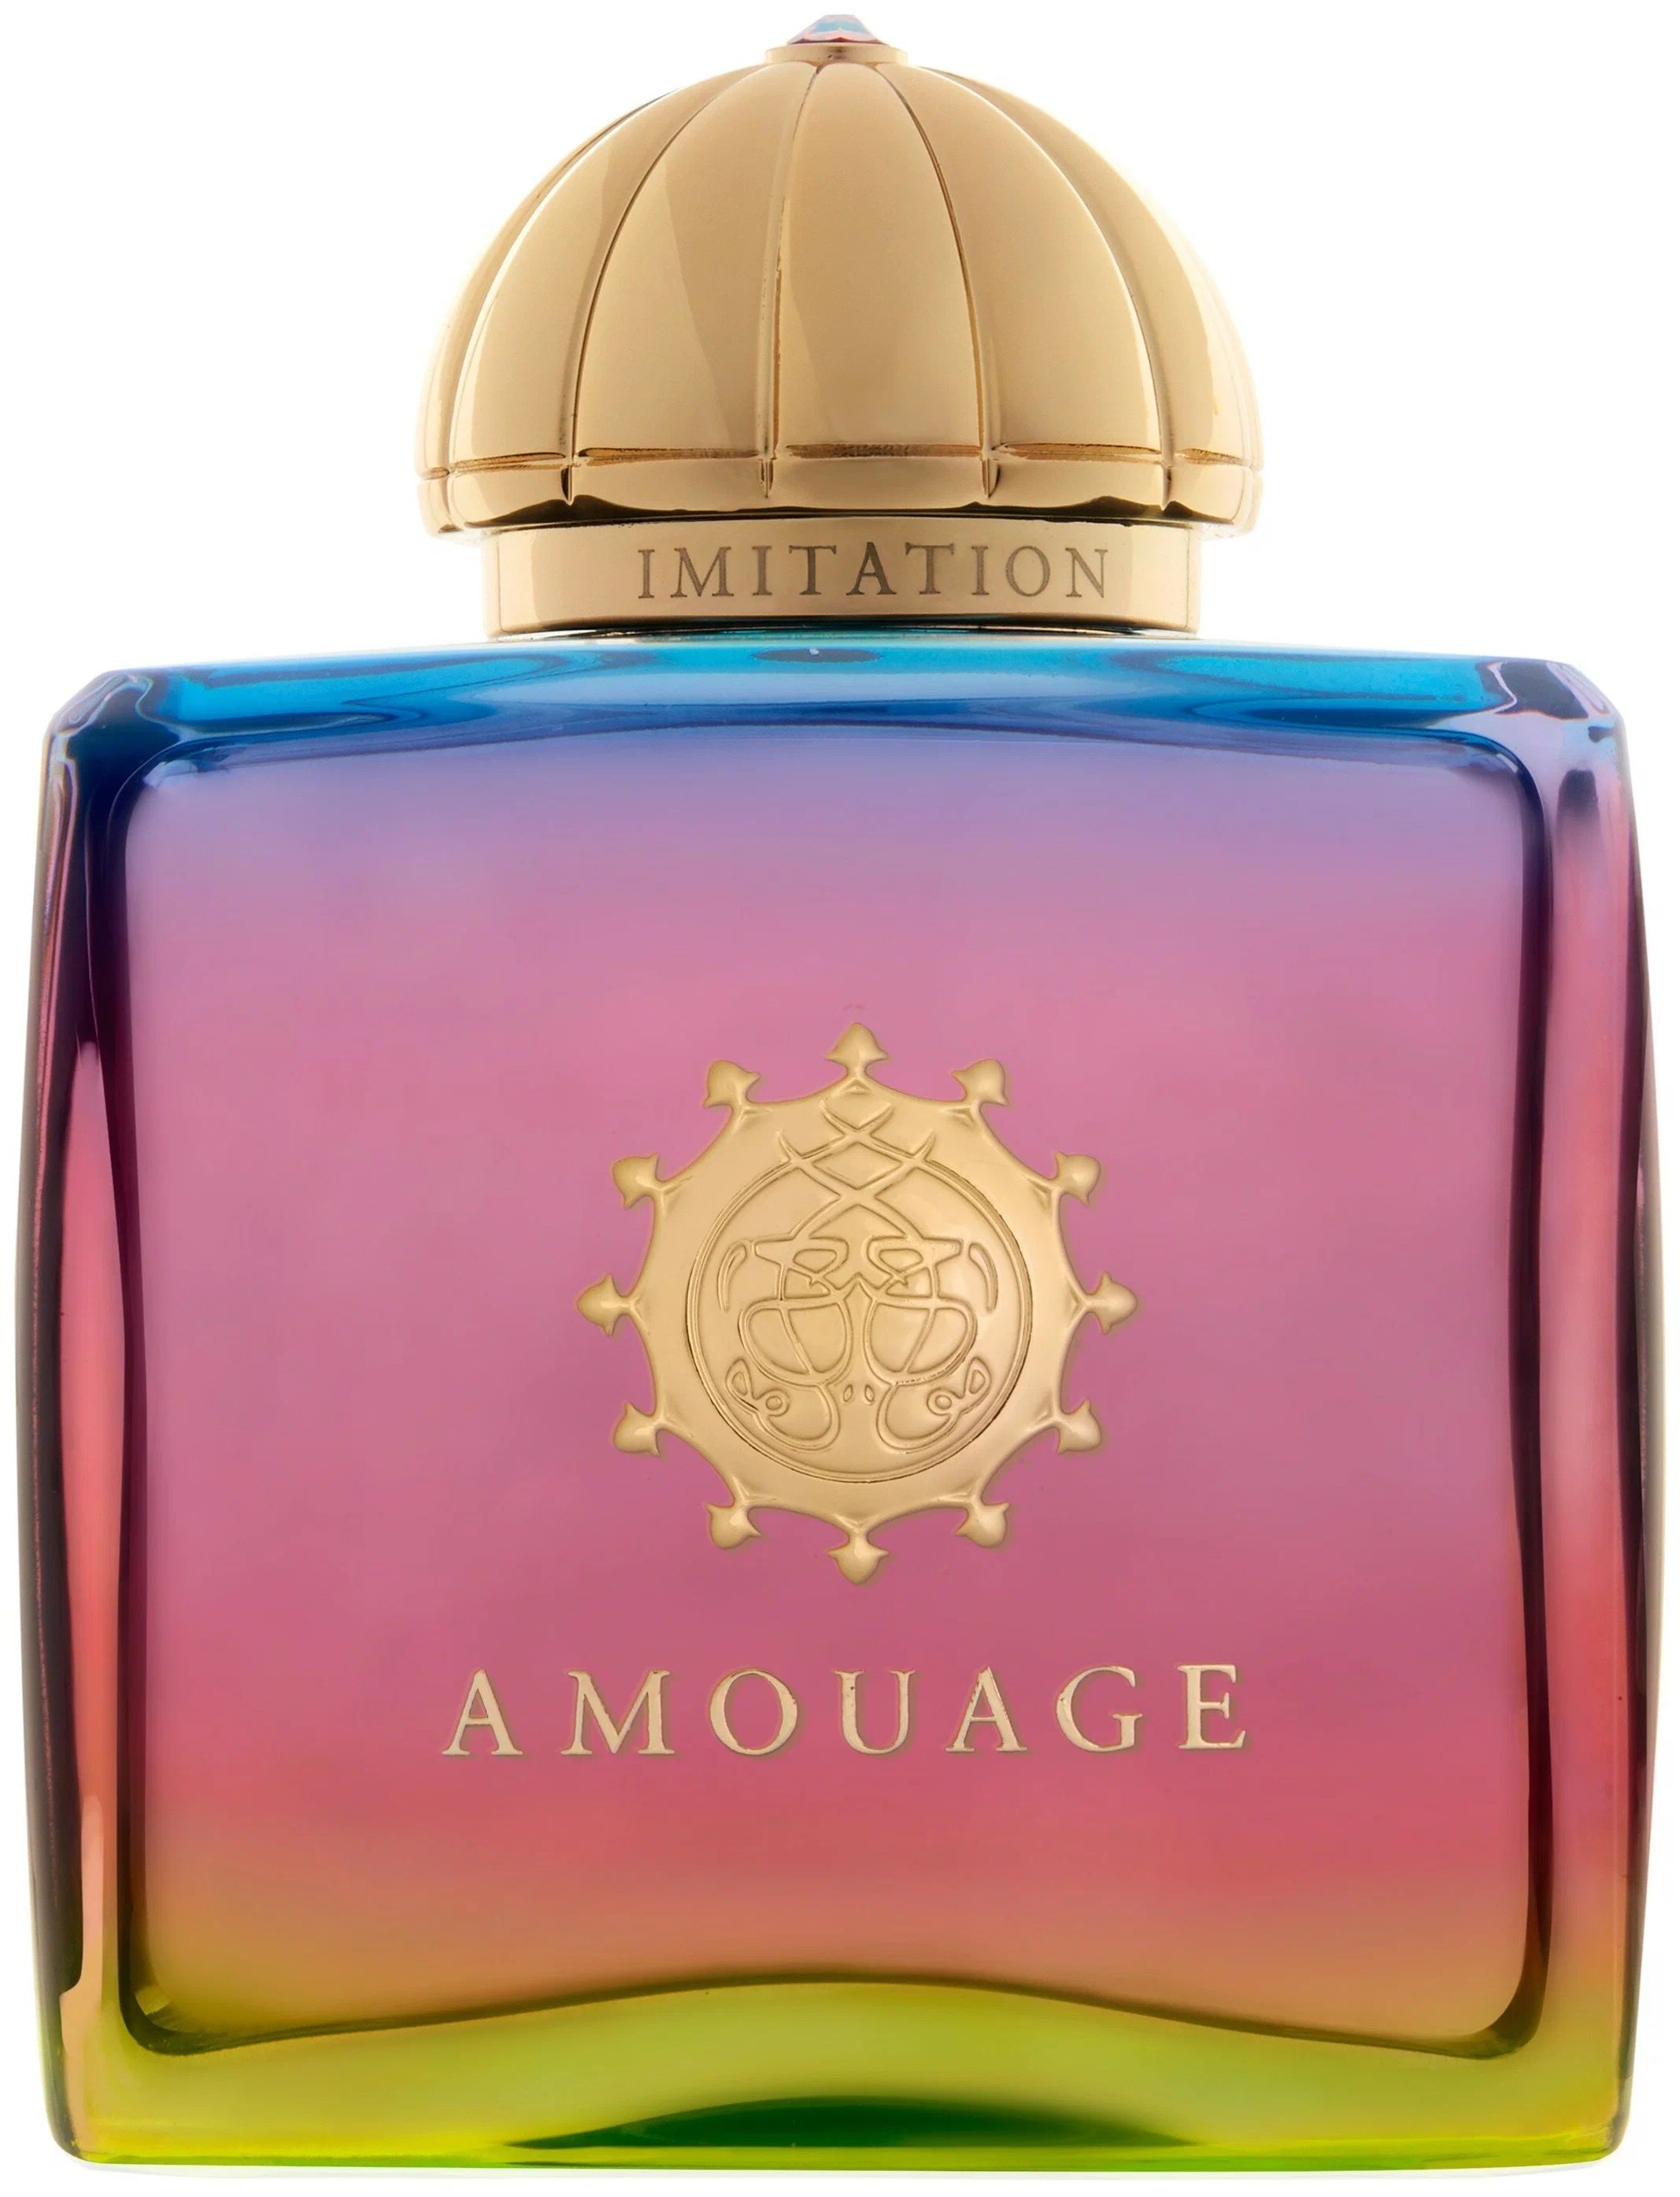 Вода парфюмерная Amouage Imitation, женская, 100 мл